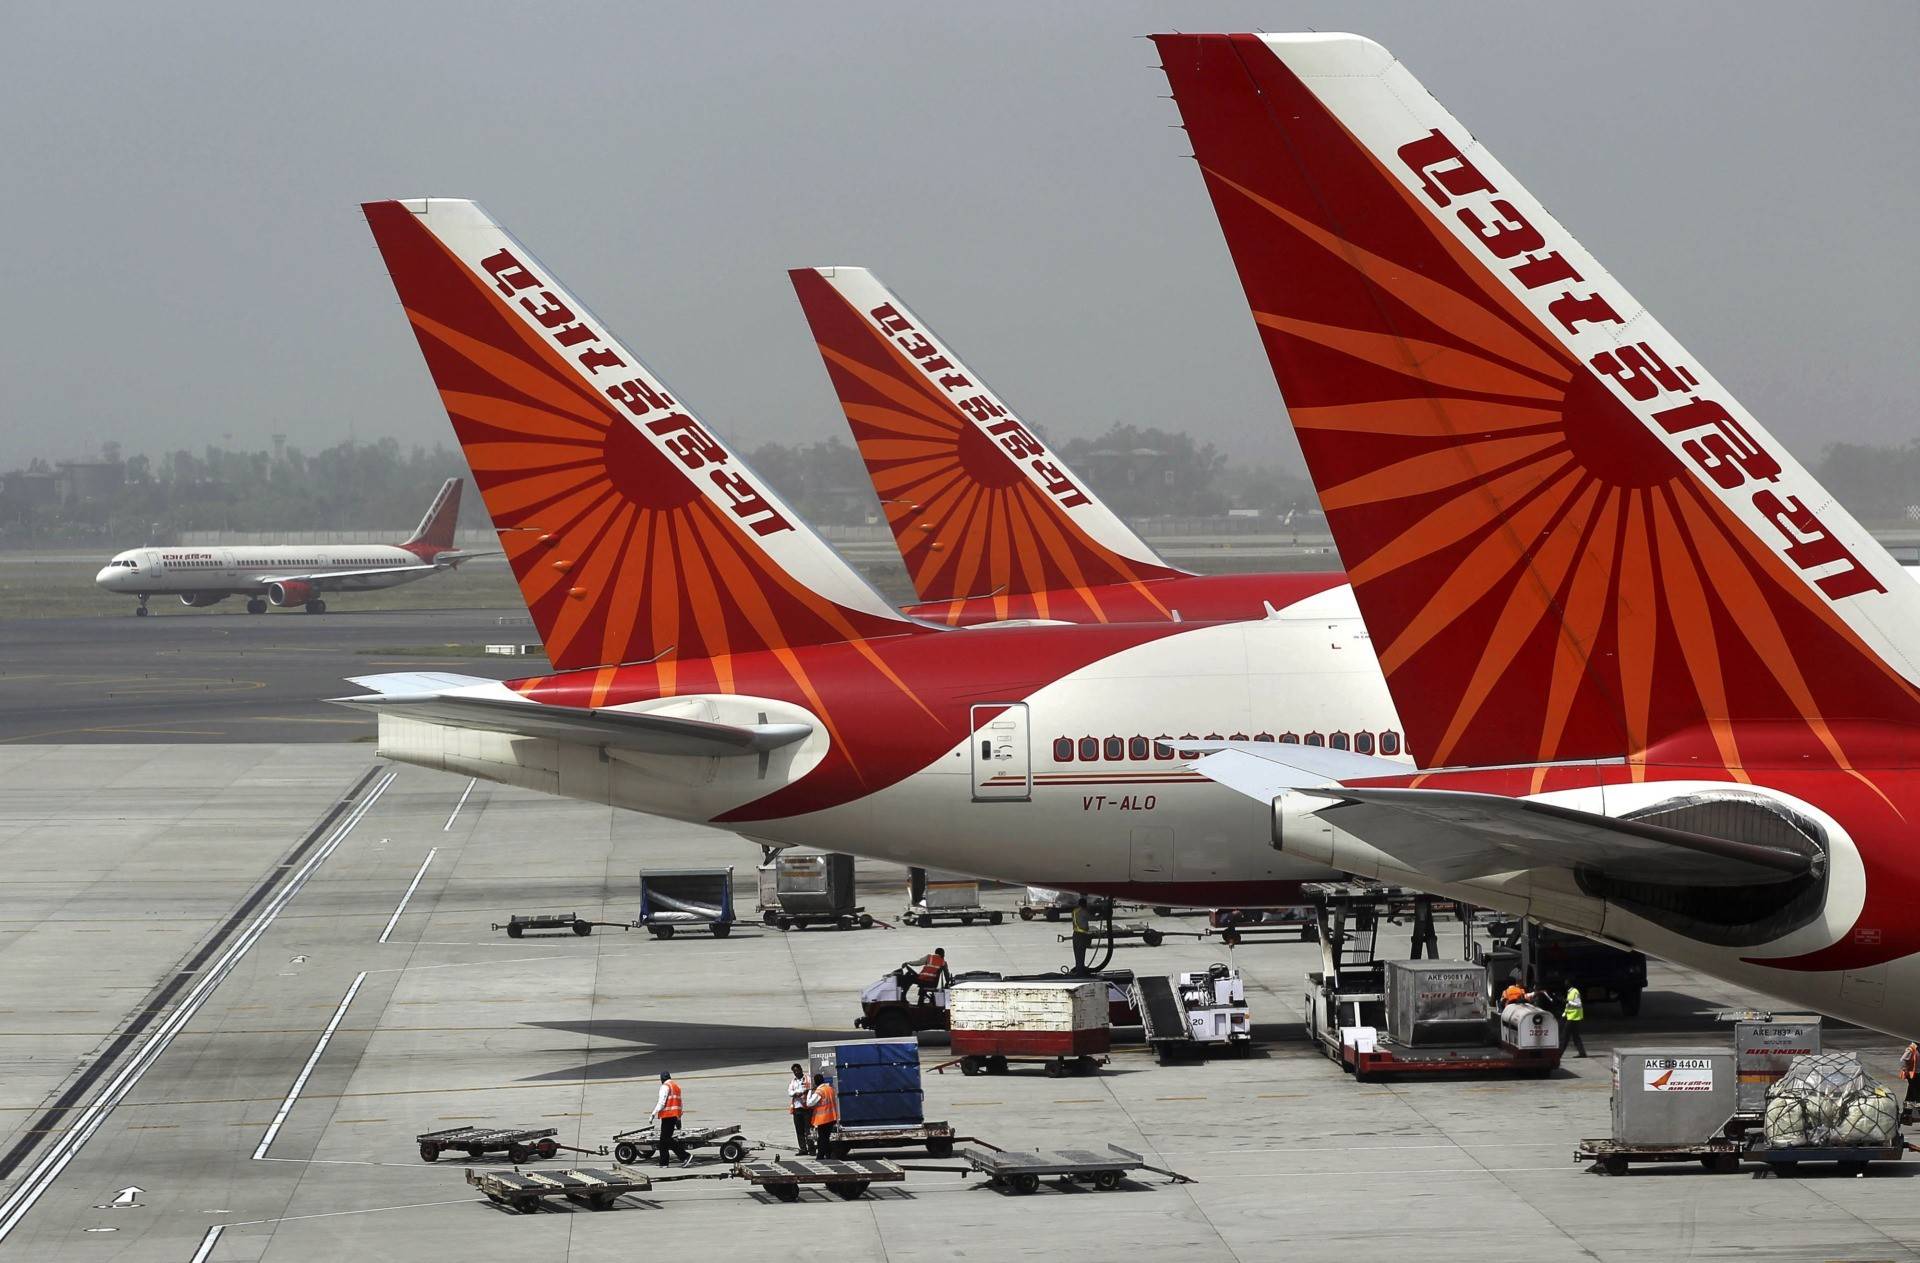 Авиакомпания air india: куда летает, какие аэропорты, парк самолетов